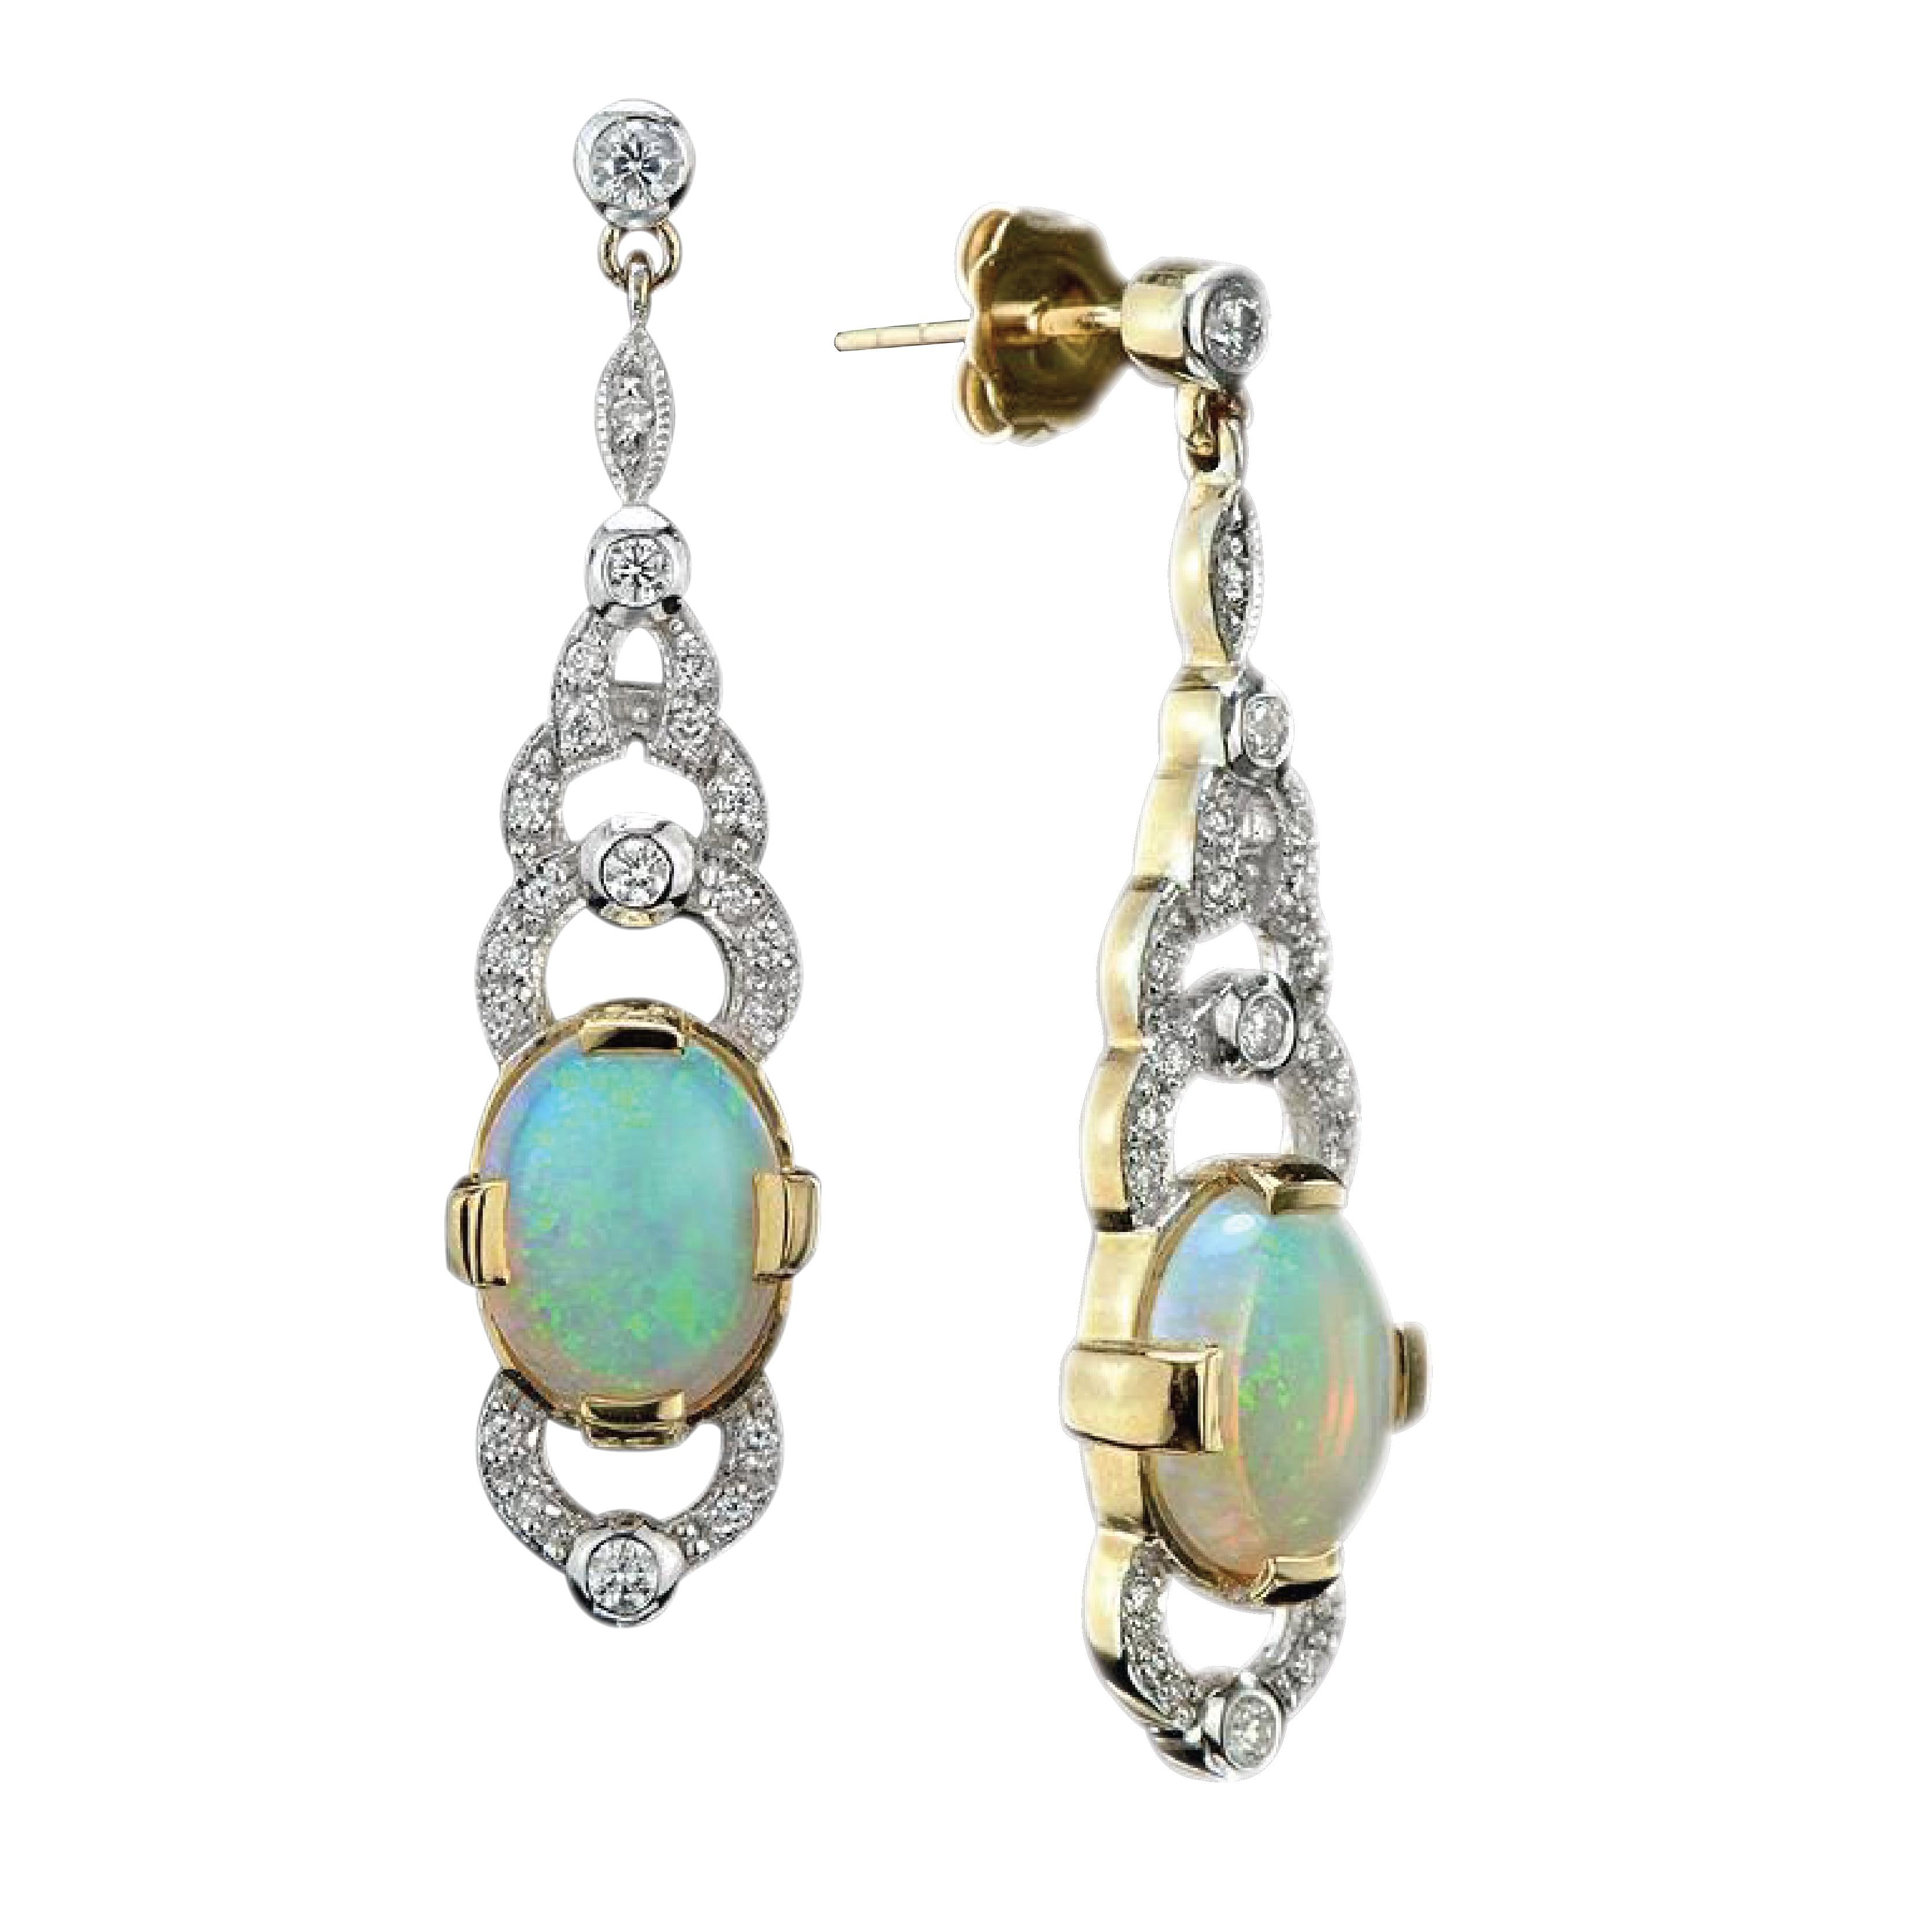 Paire de boucles d'oreilles de style Art déco en opale naturelle d'Australie et diamant, chaque boucle d'oreille comprenant une opale naturelle de forme ovale au centre d'une grappe de diamants sertis à ciel ouvert au-dessus et au-dessous. Élégantes